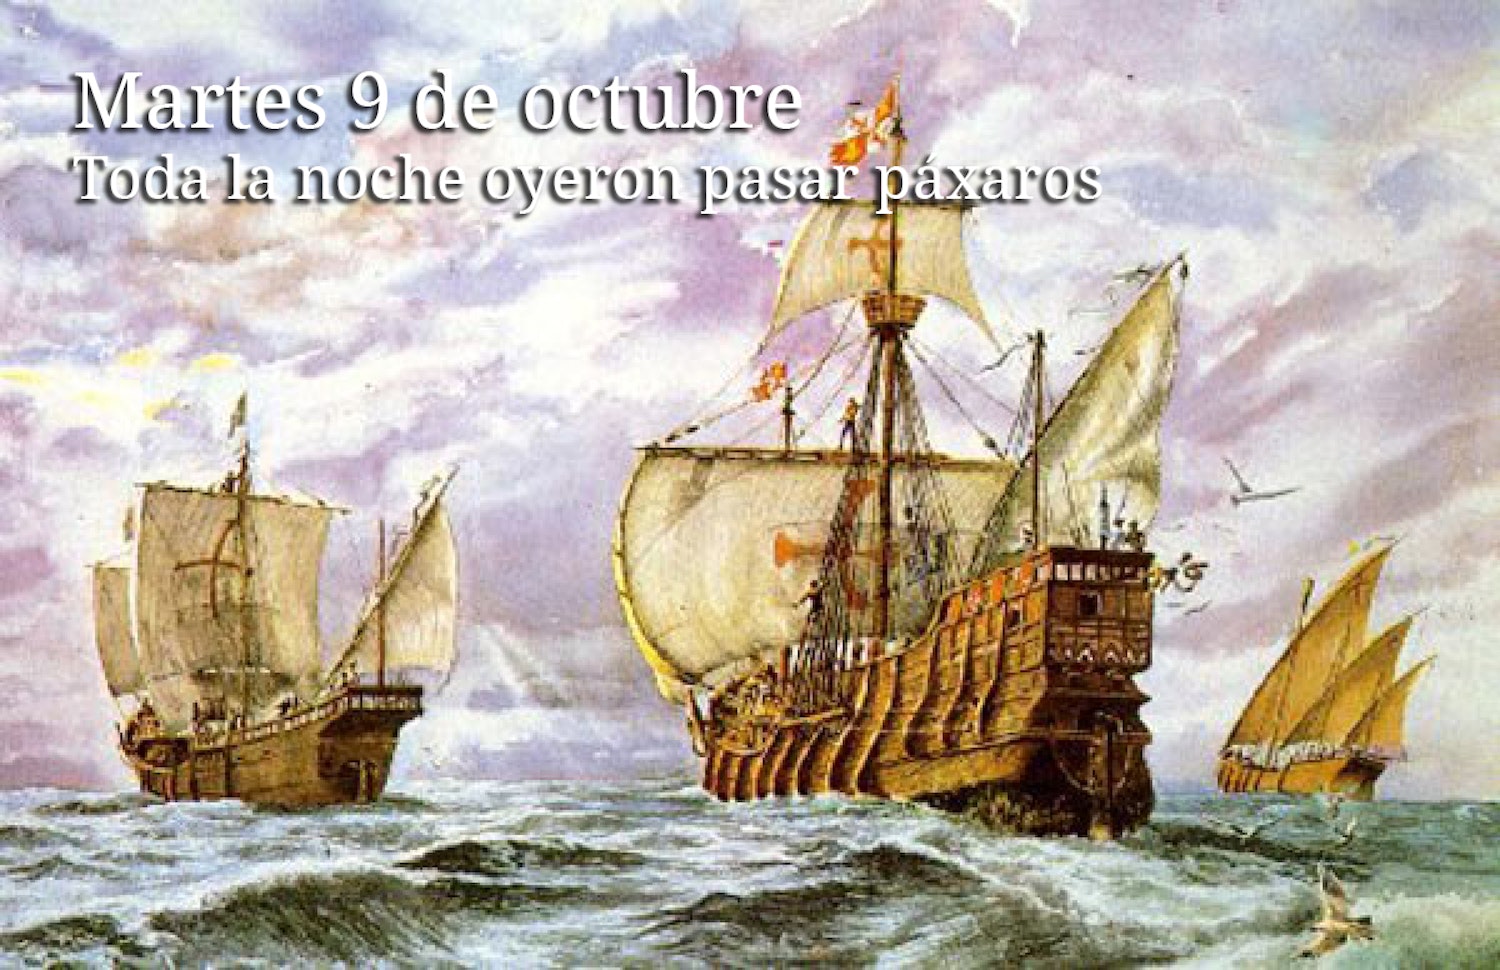 Судно экспедиции колумба. Три корабля Христофора Колумба.